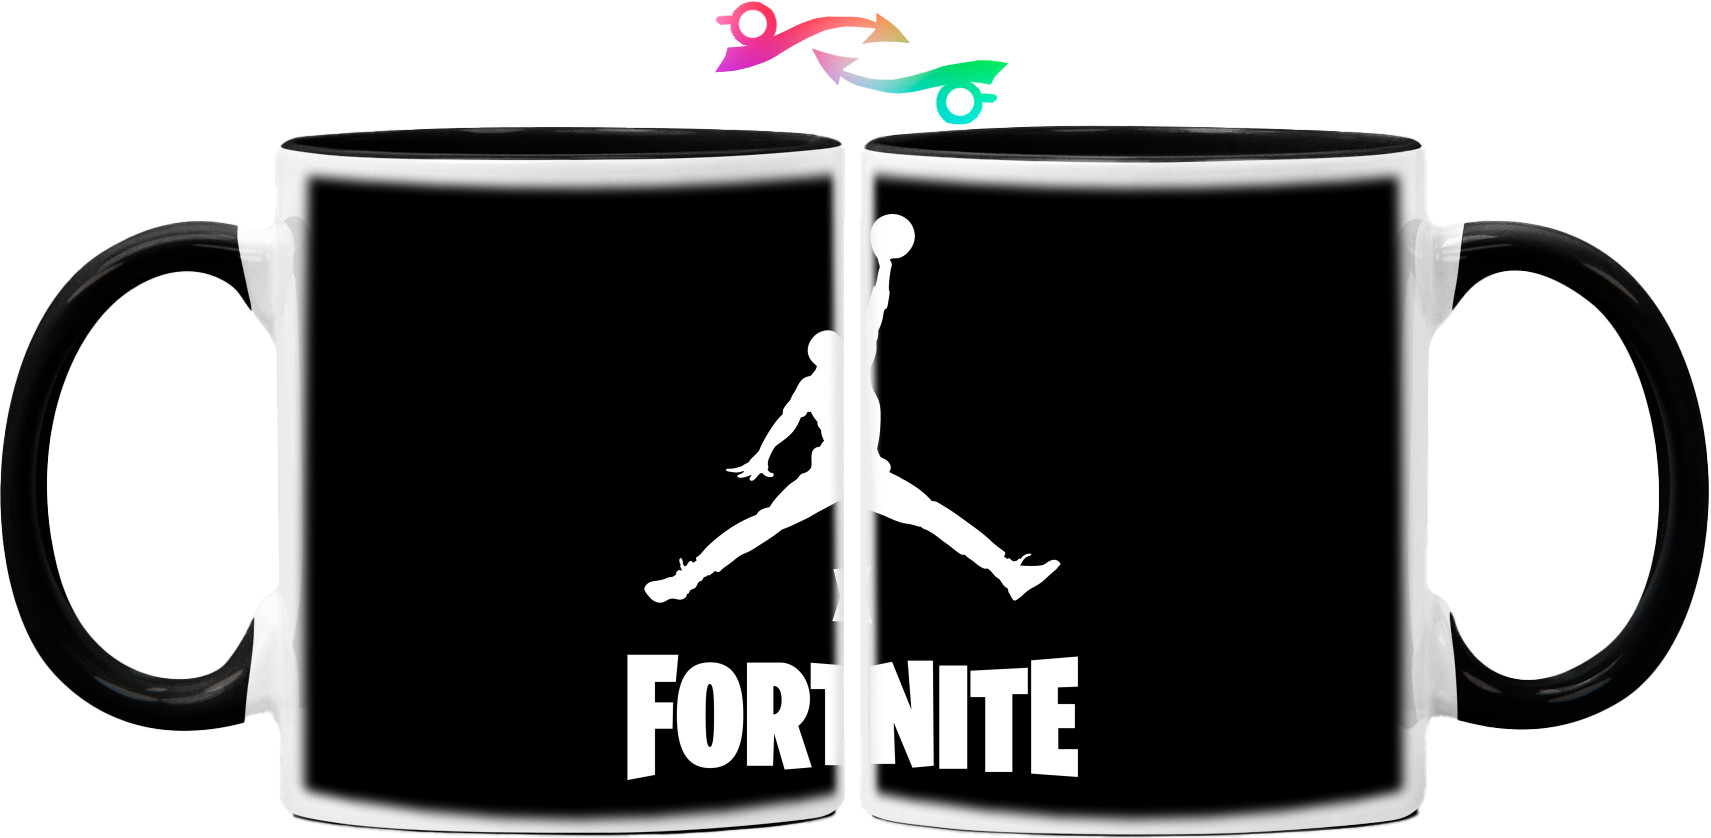 Jordan x Fortnite (2)